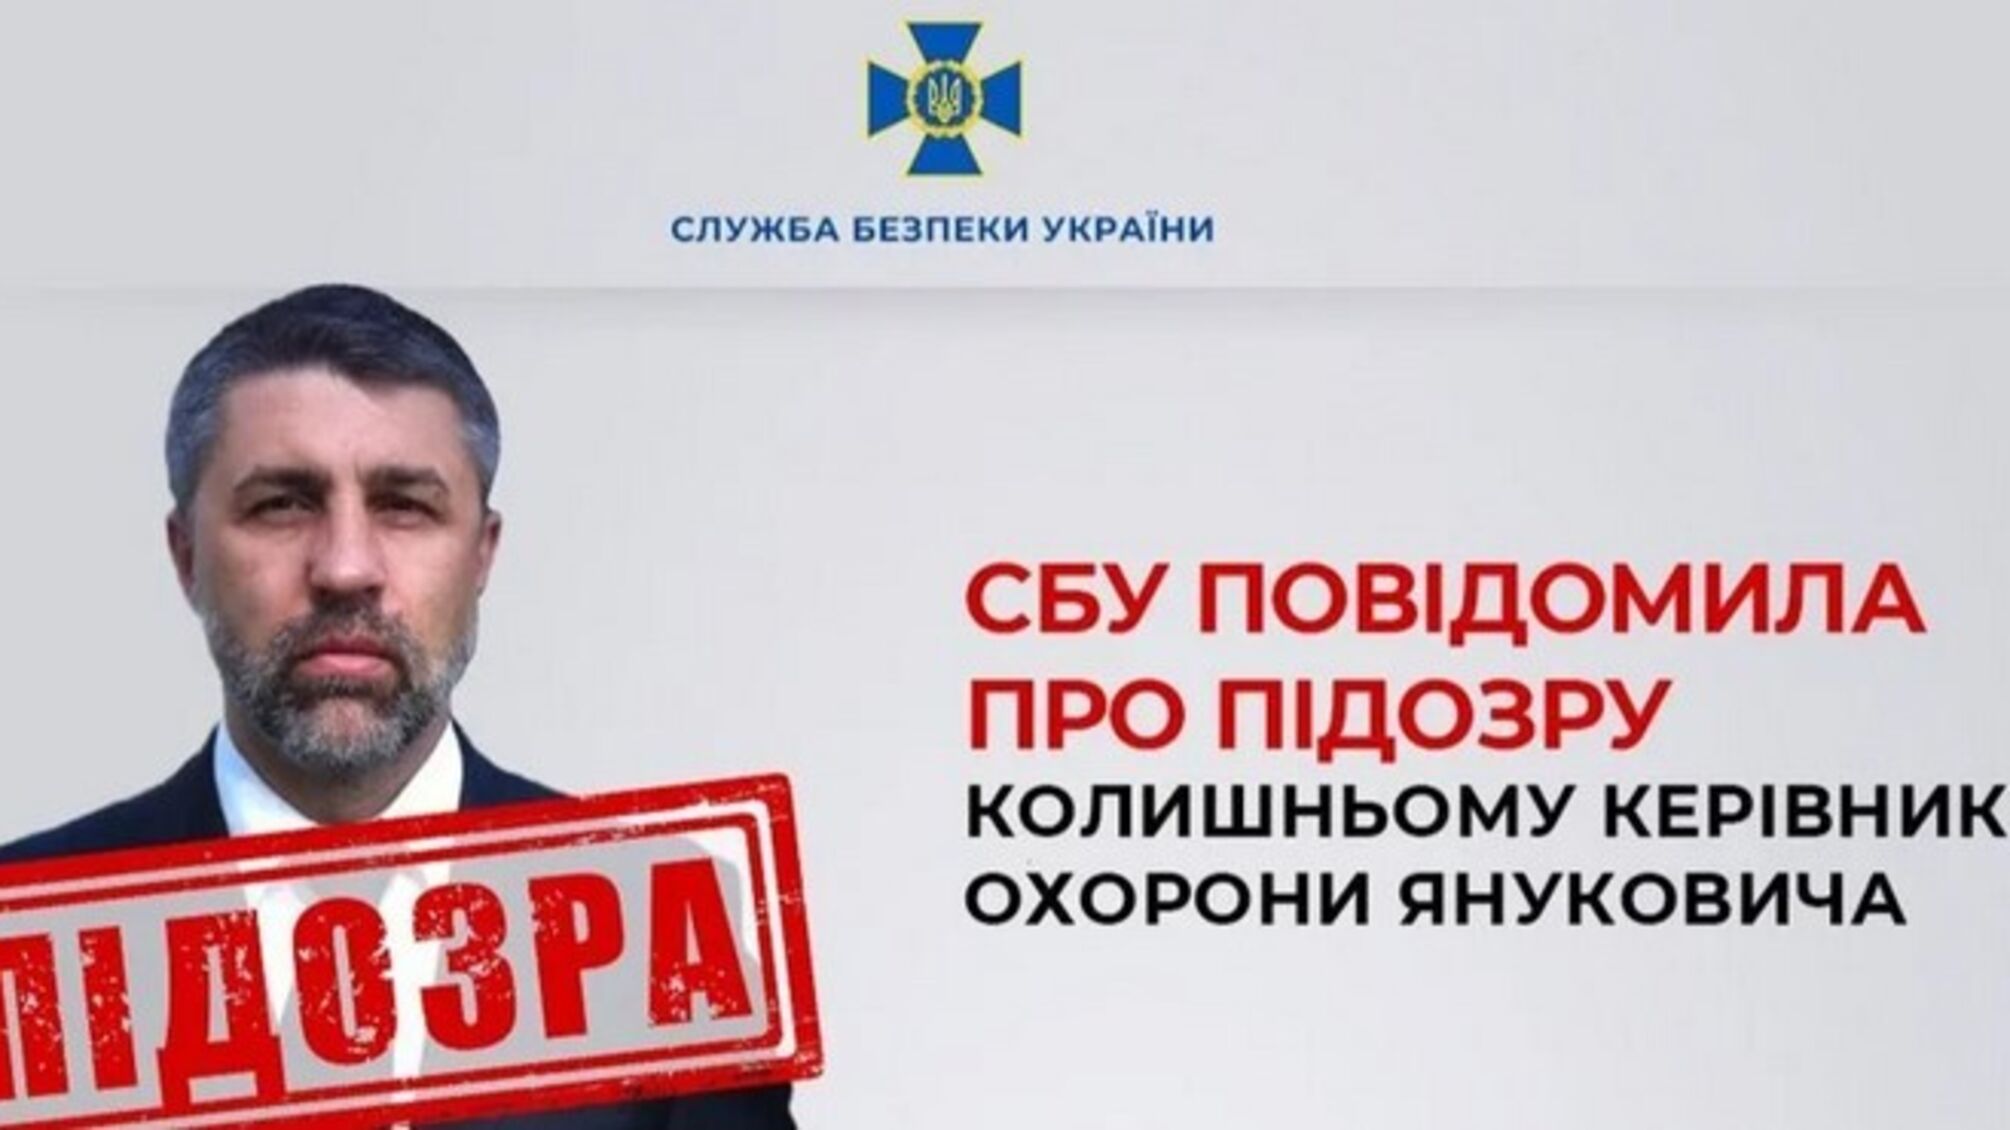 Бывшему главе охраны Януковича сообщено о подозрении, – СБУ